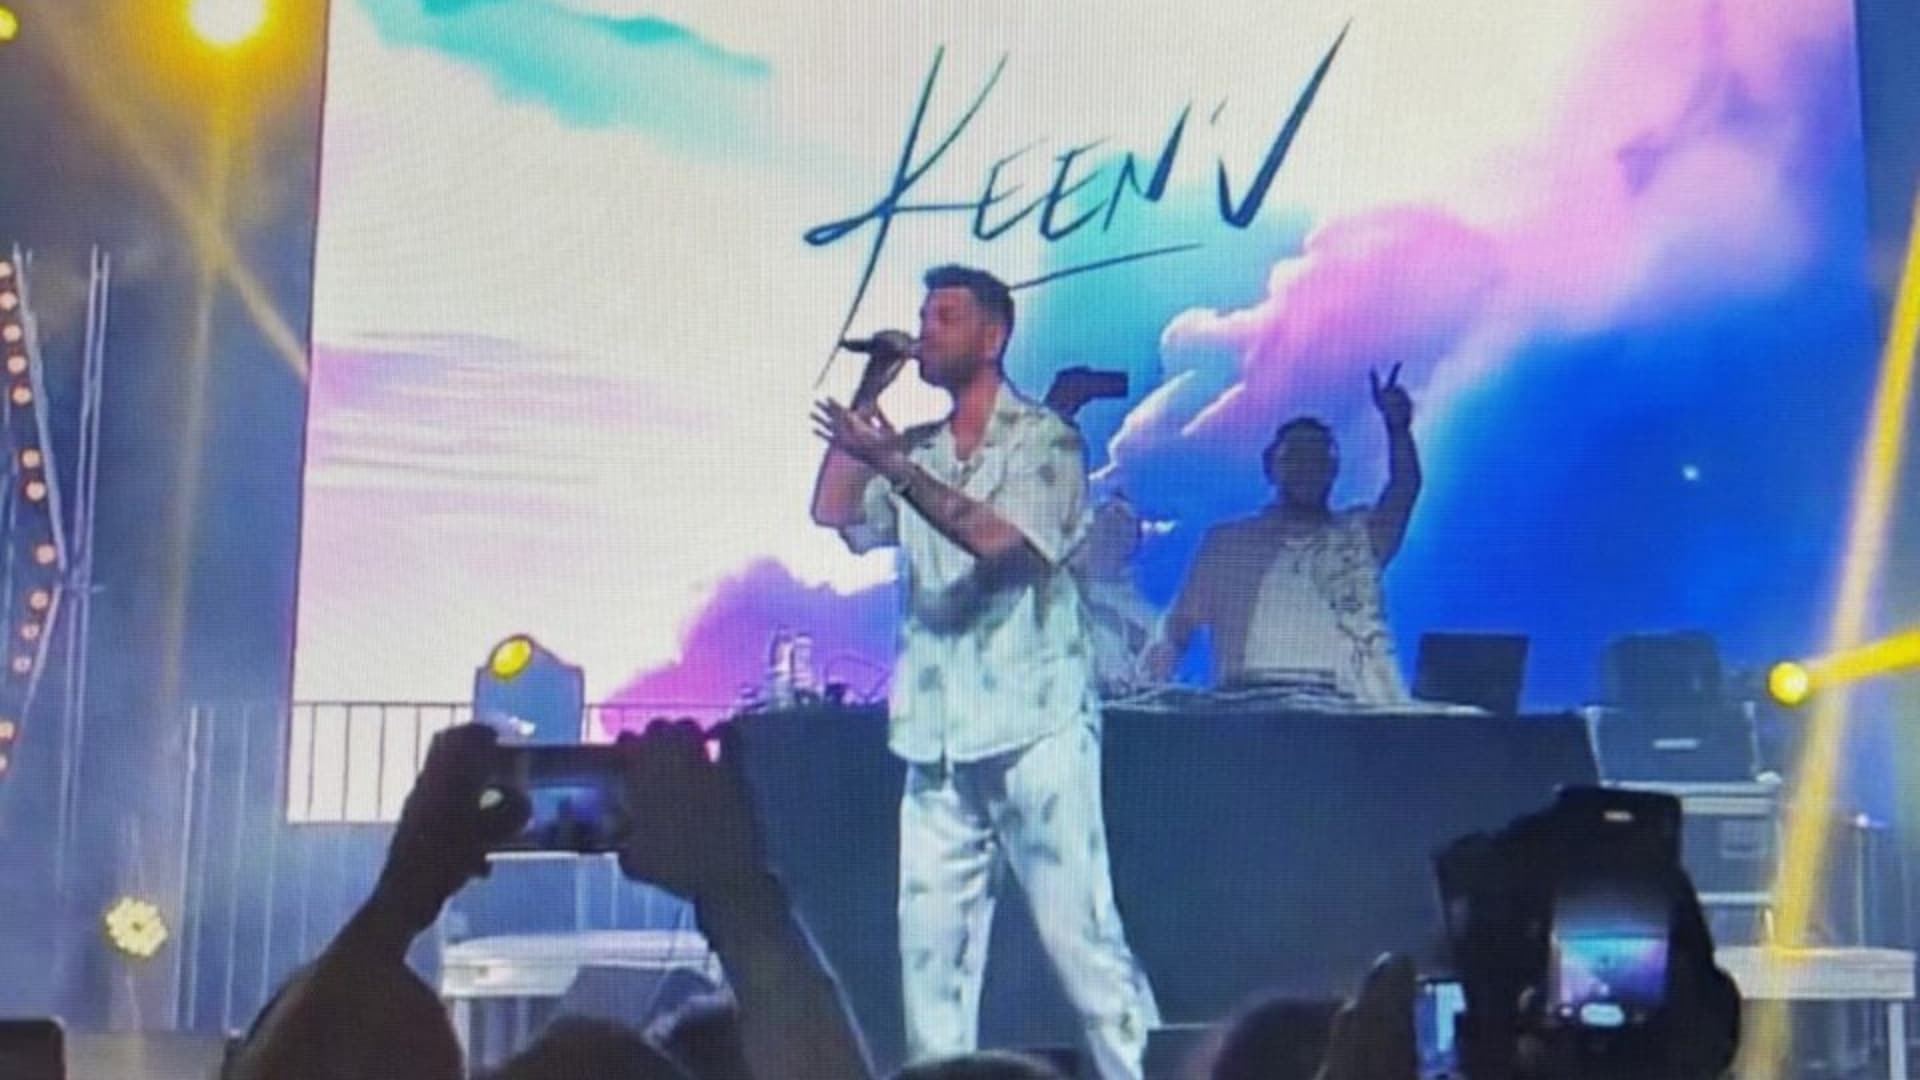 'Zéro pointé' : le concert de Keen'V tourne au fiasco, ses fans en colère filment la scène